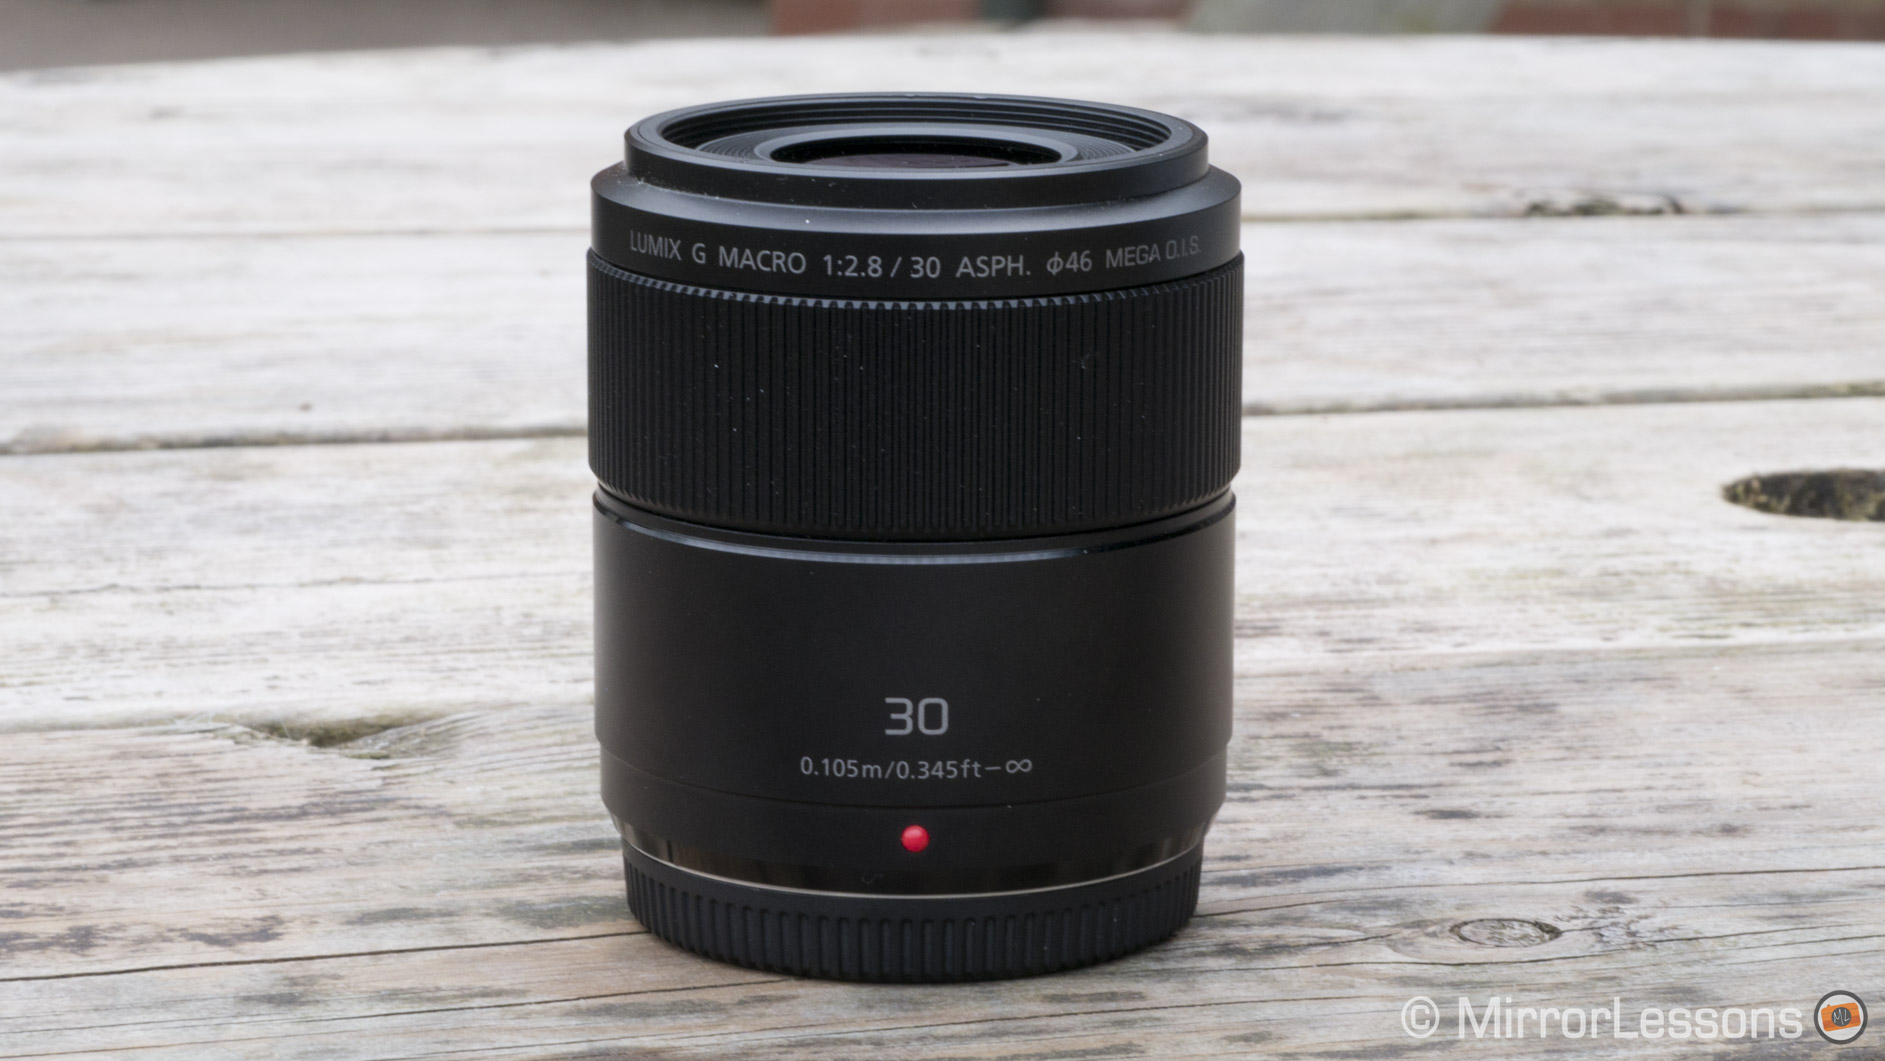 Boomgaard boekje Kosmisch The “Standard” Macro Lens – Panasonic Lumix 30mm f/2.8 Macro Review